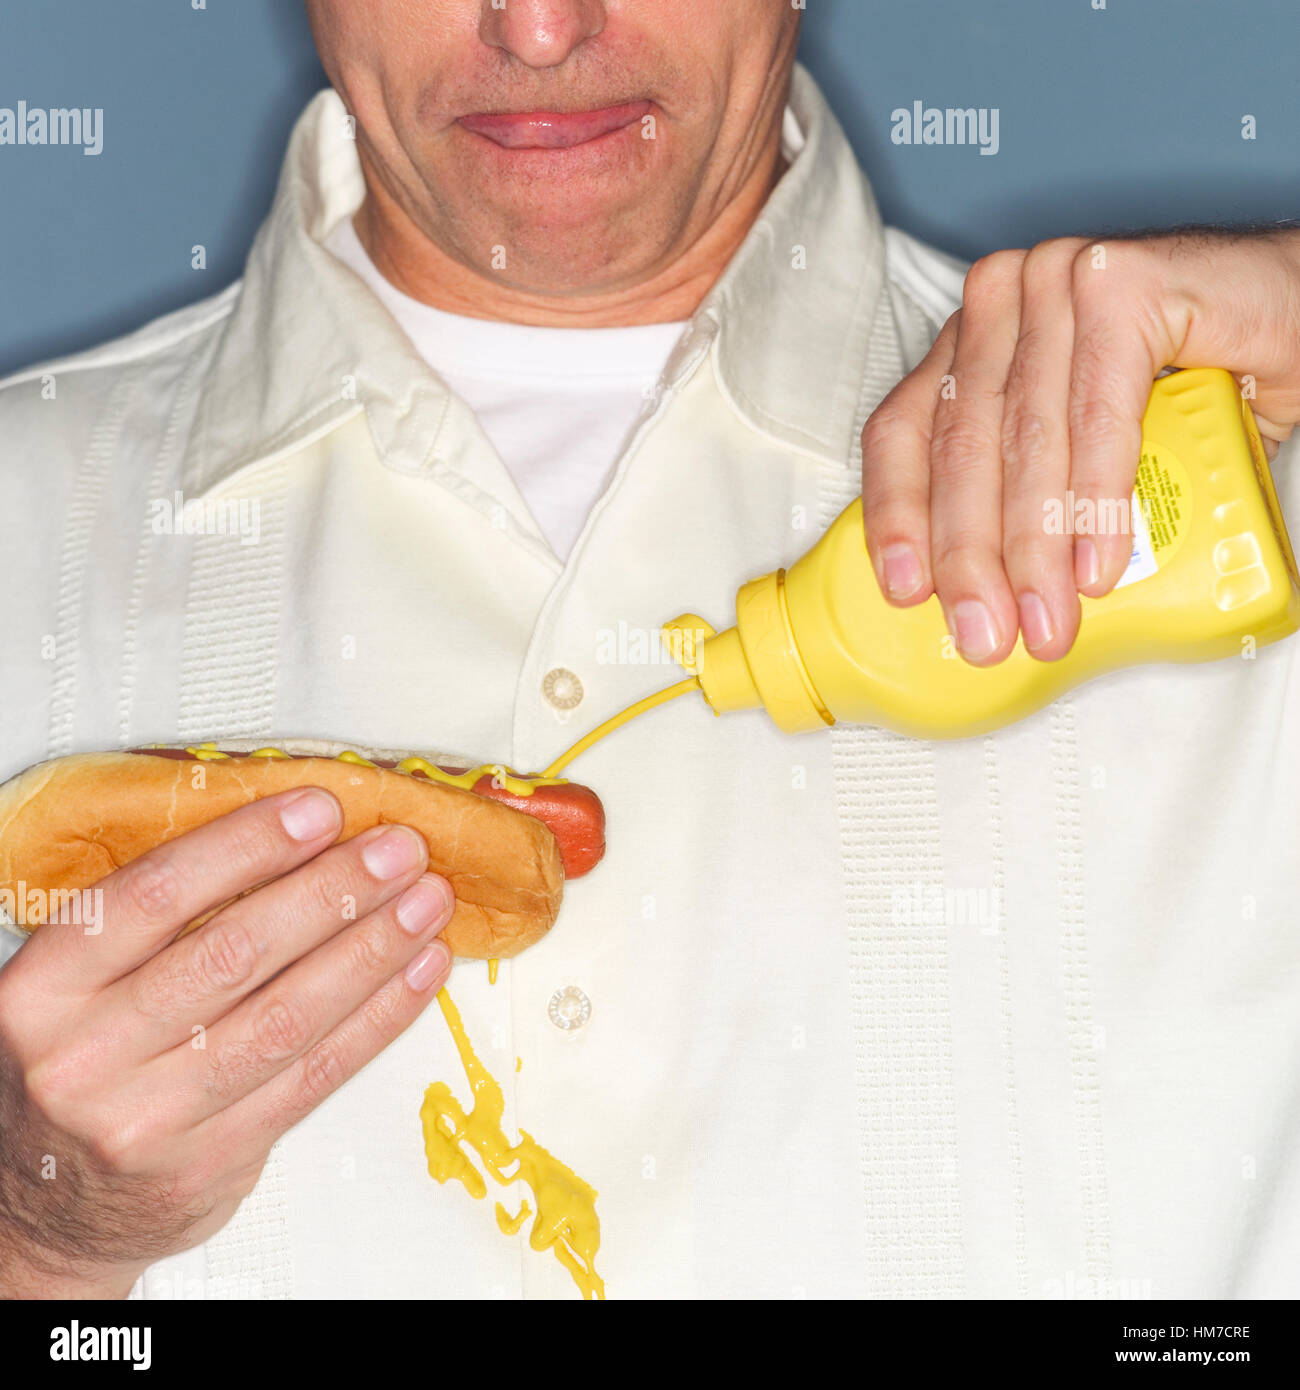 Mature man holding hot-dog et renverser accidentellement la moutarde sur shirt Banque D'Images